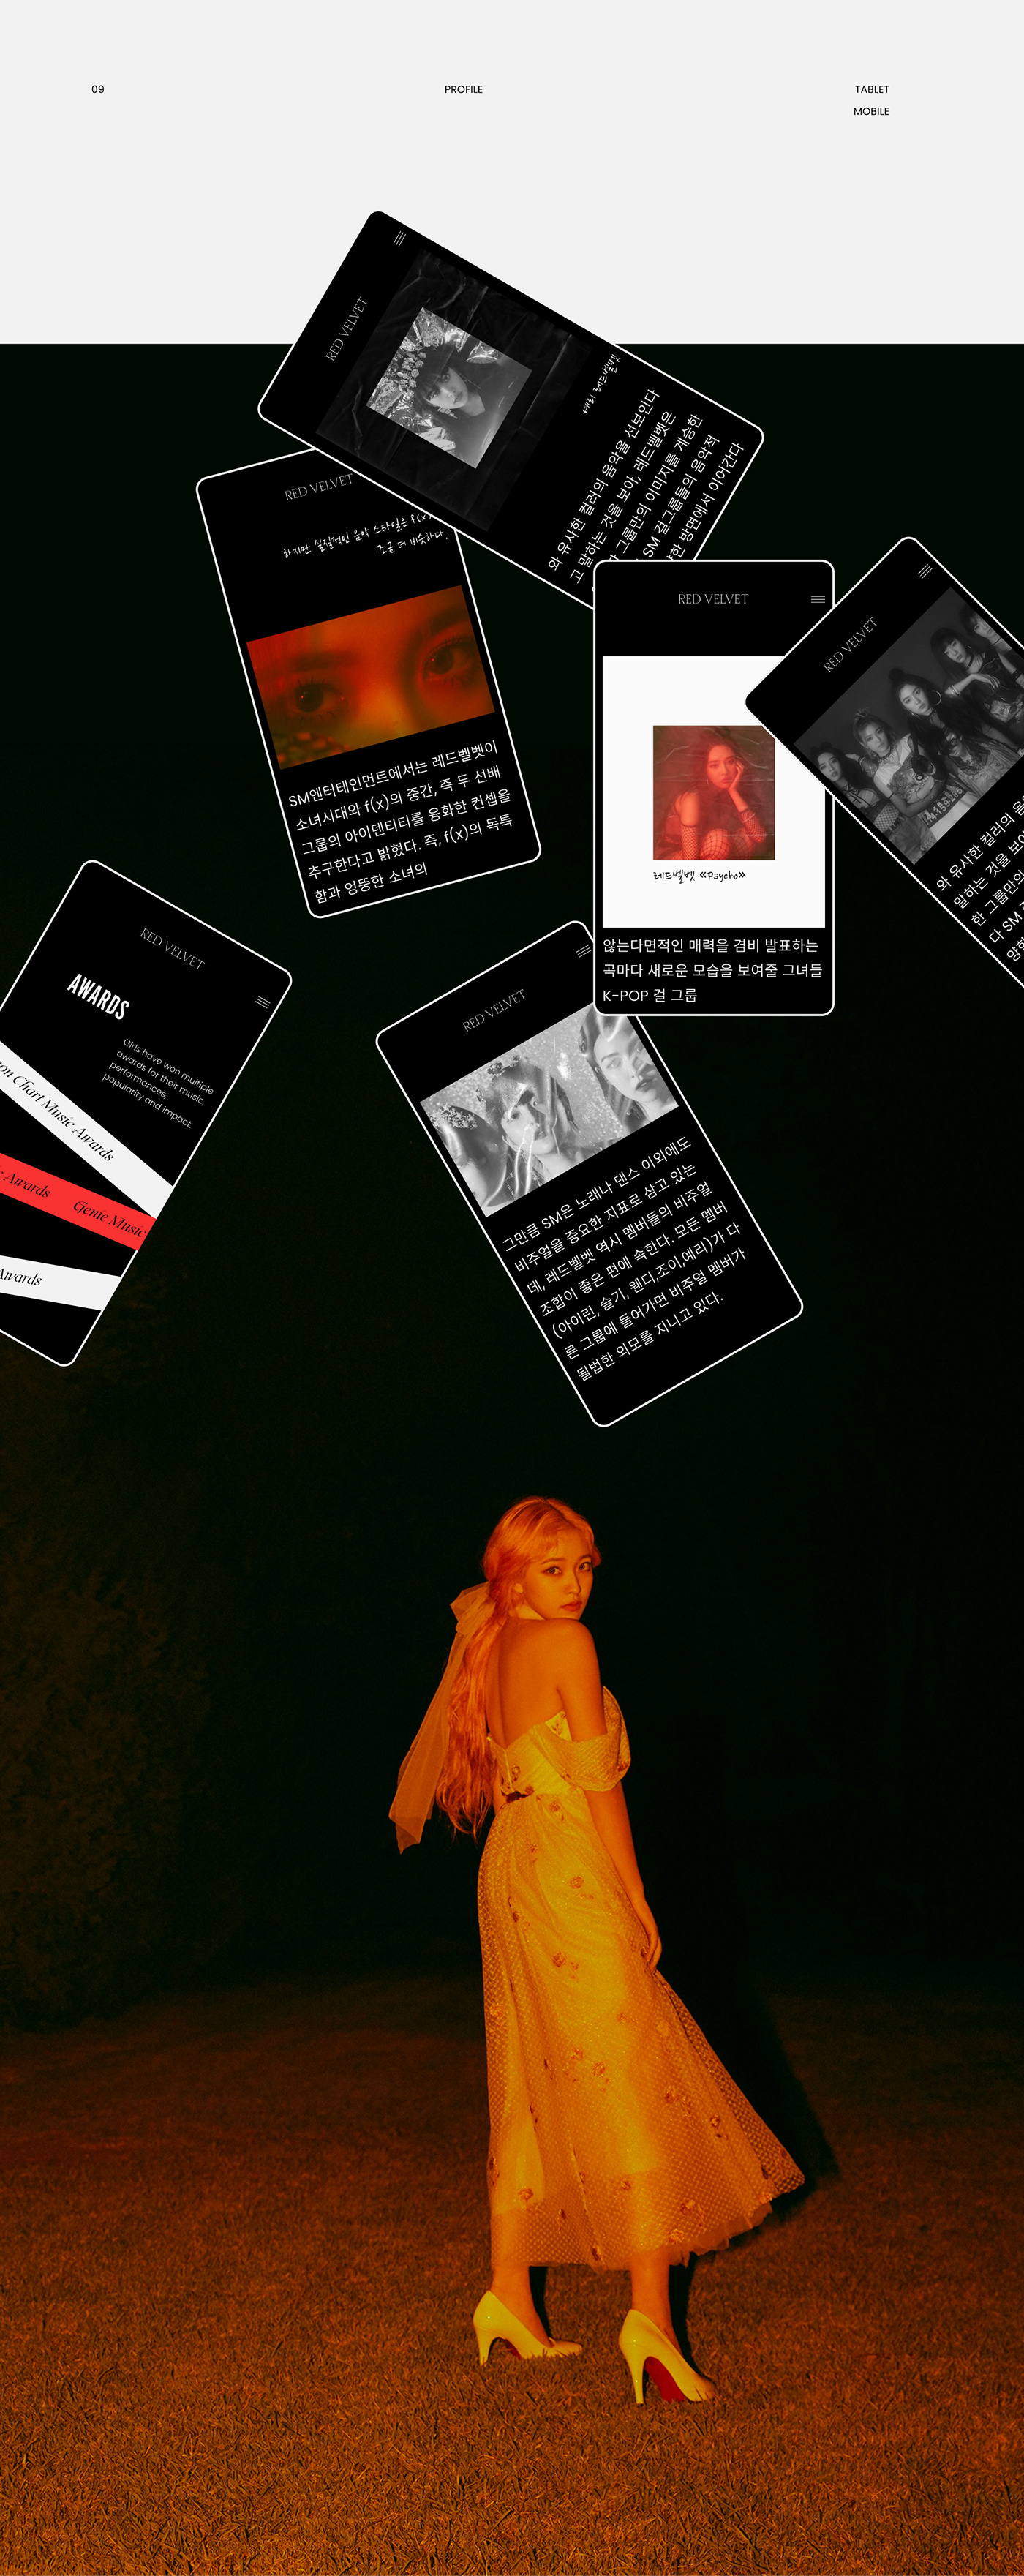 interaction k-pop korean music red velvet redesign UI ux Website grid